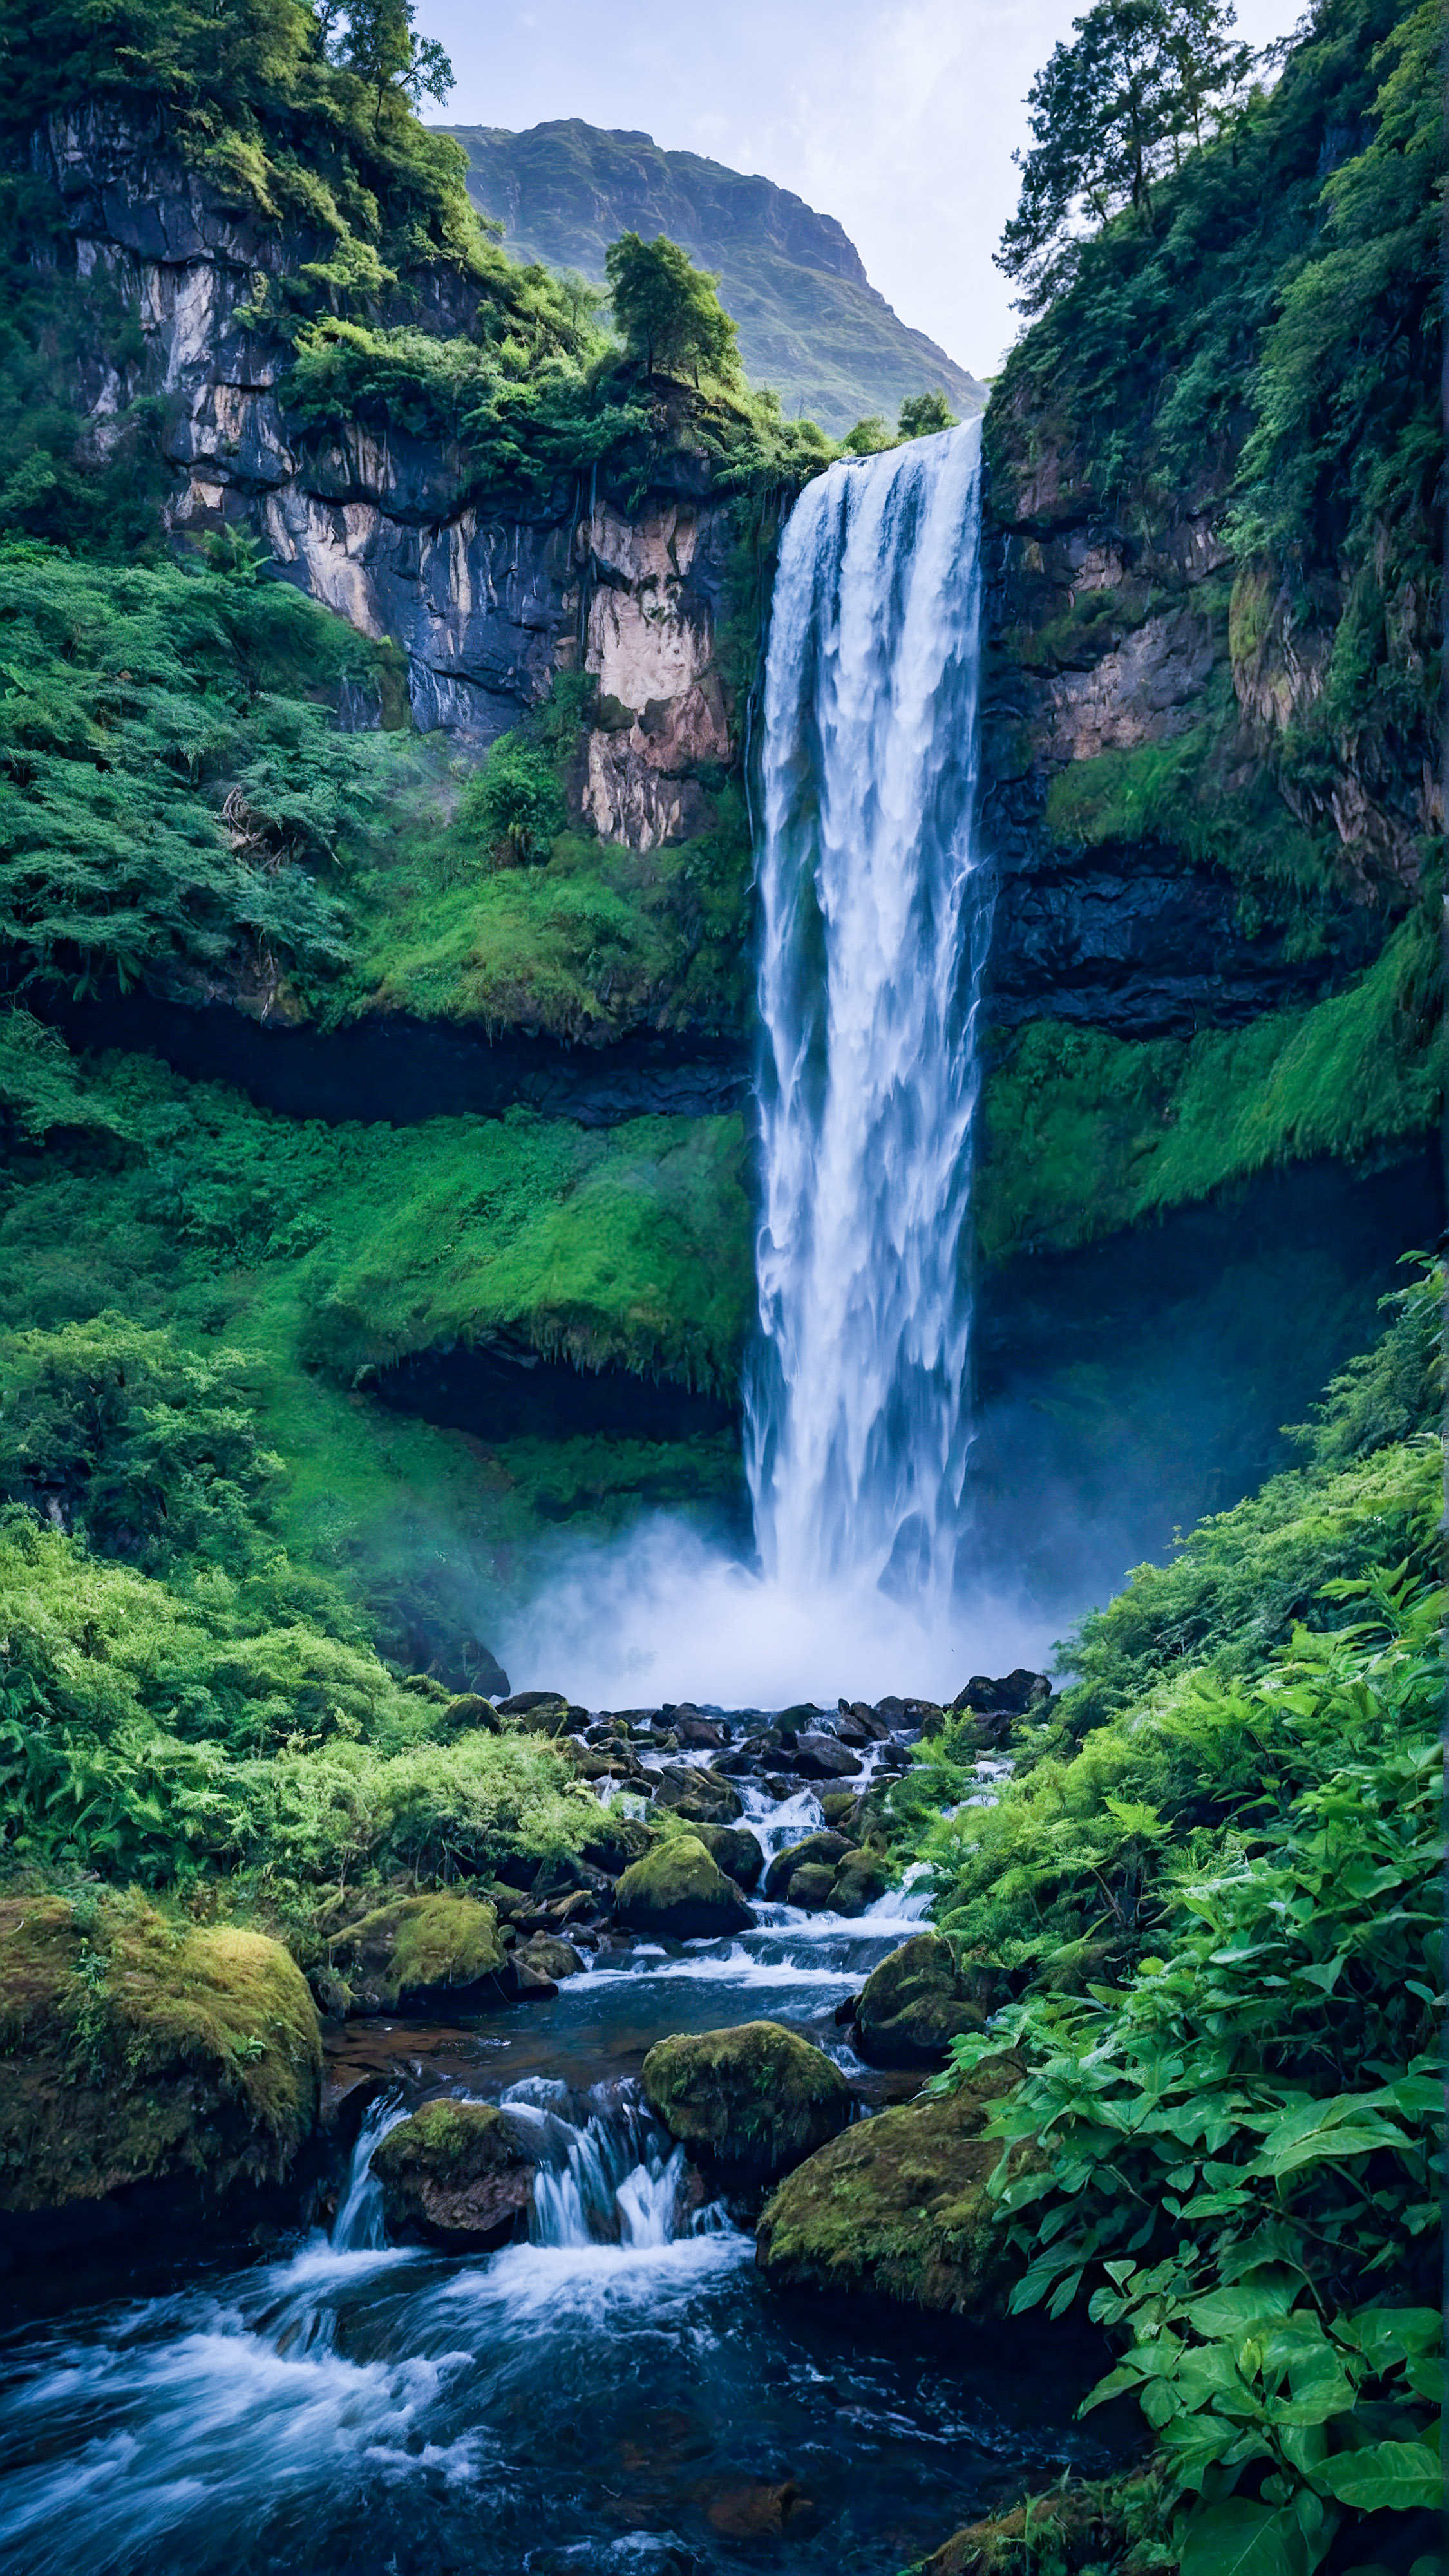 Découvrez la majesté de la nature avec notre meilleur beau fond d'écran pour iPhone, représentant une cascade majestueuse dévalant une montagne, entourée de verdure luxuriante.